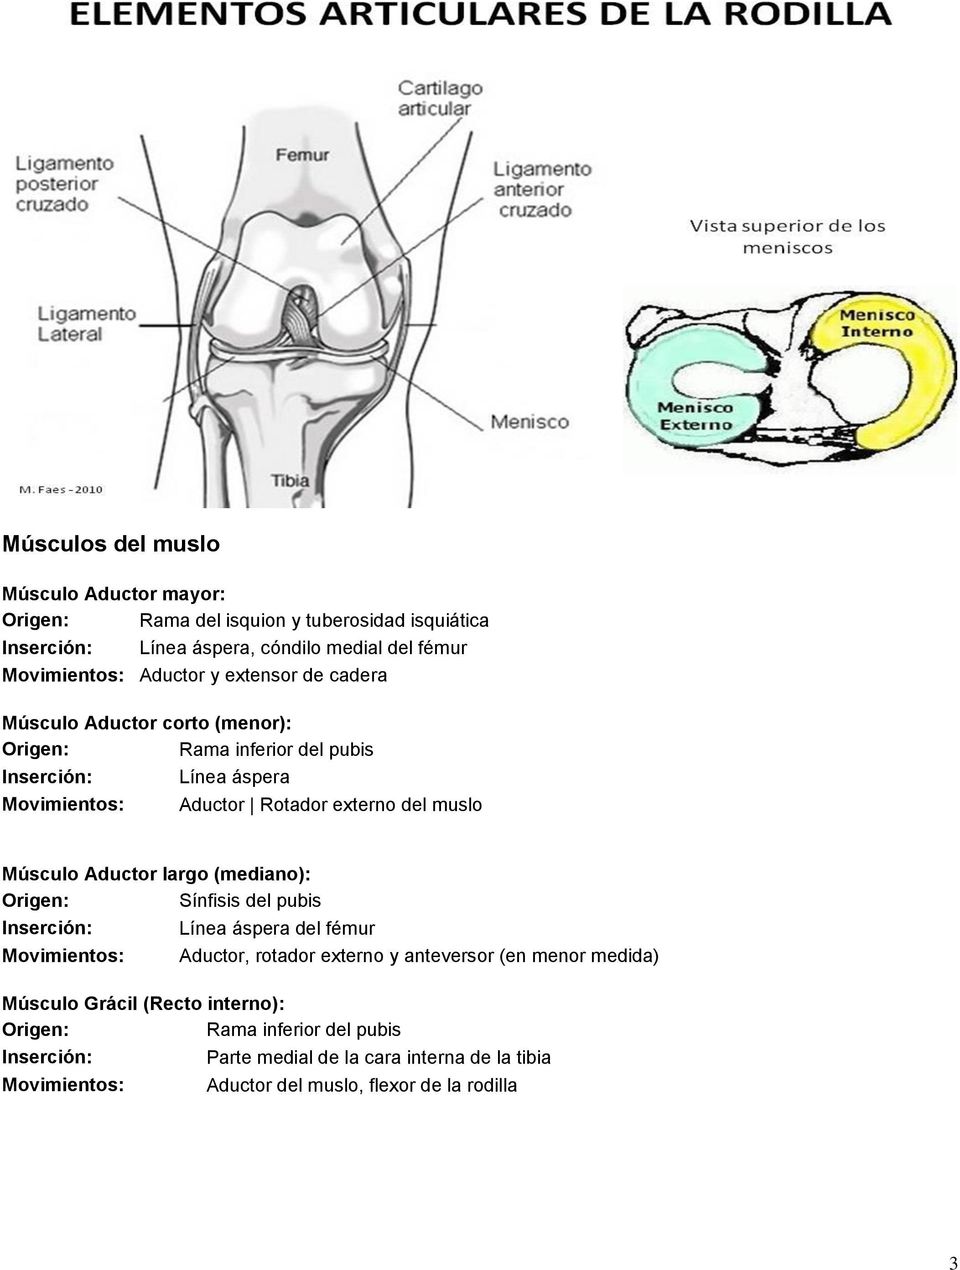 Aductor largo (mediano): Sínfisis del pubis Línea áspera del fémur Movimientos: Aductor, rotador externo y anteversor (en menor medida) Músculo